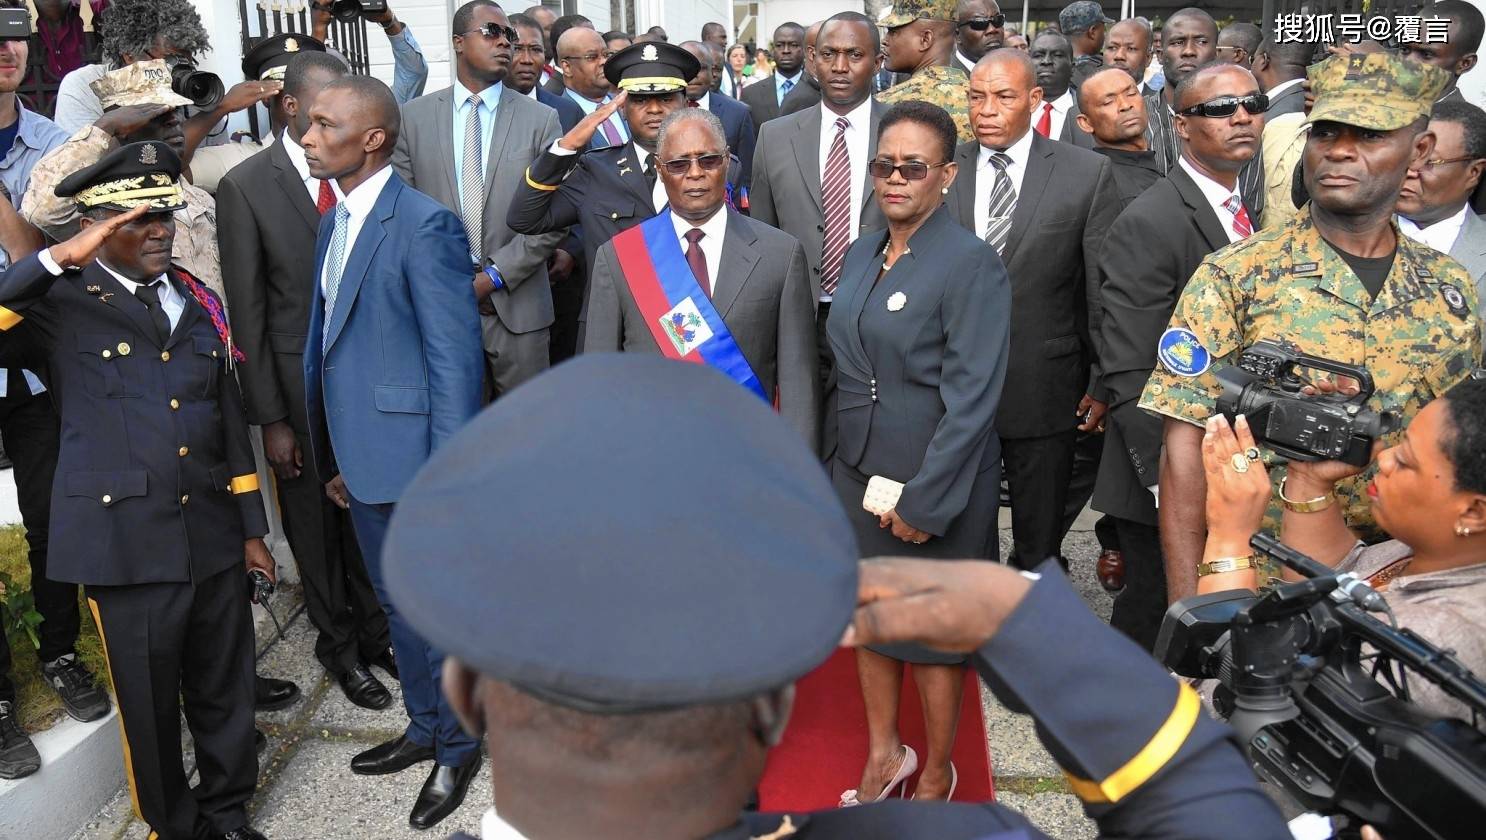 原创涉嫌违宪!在海地总统遇刺后,总理却着急继位"代理总统"